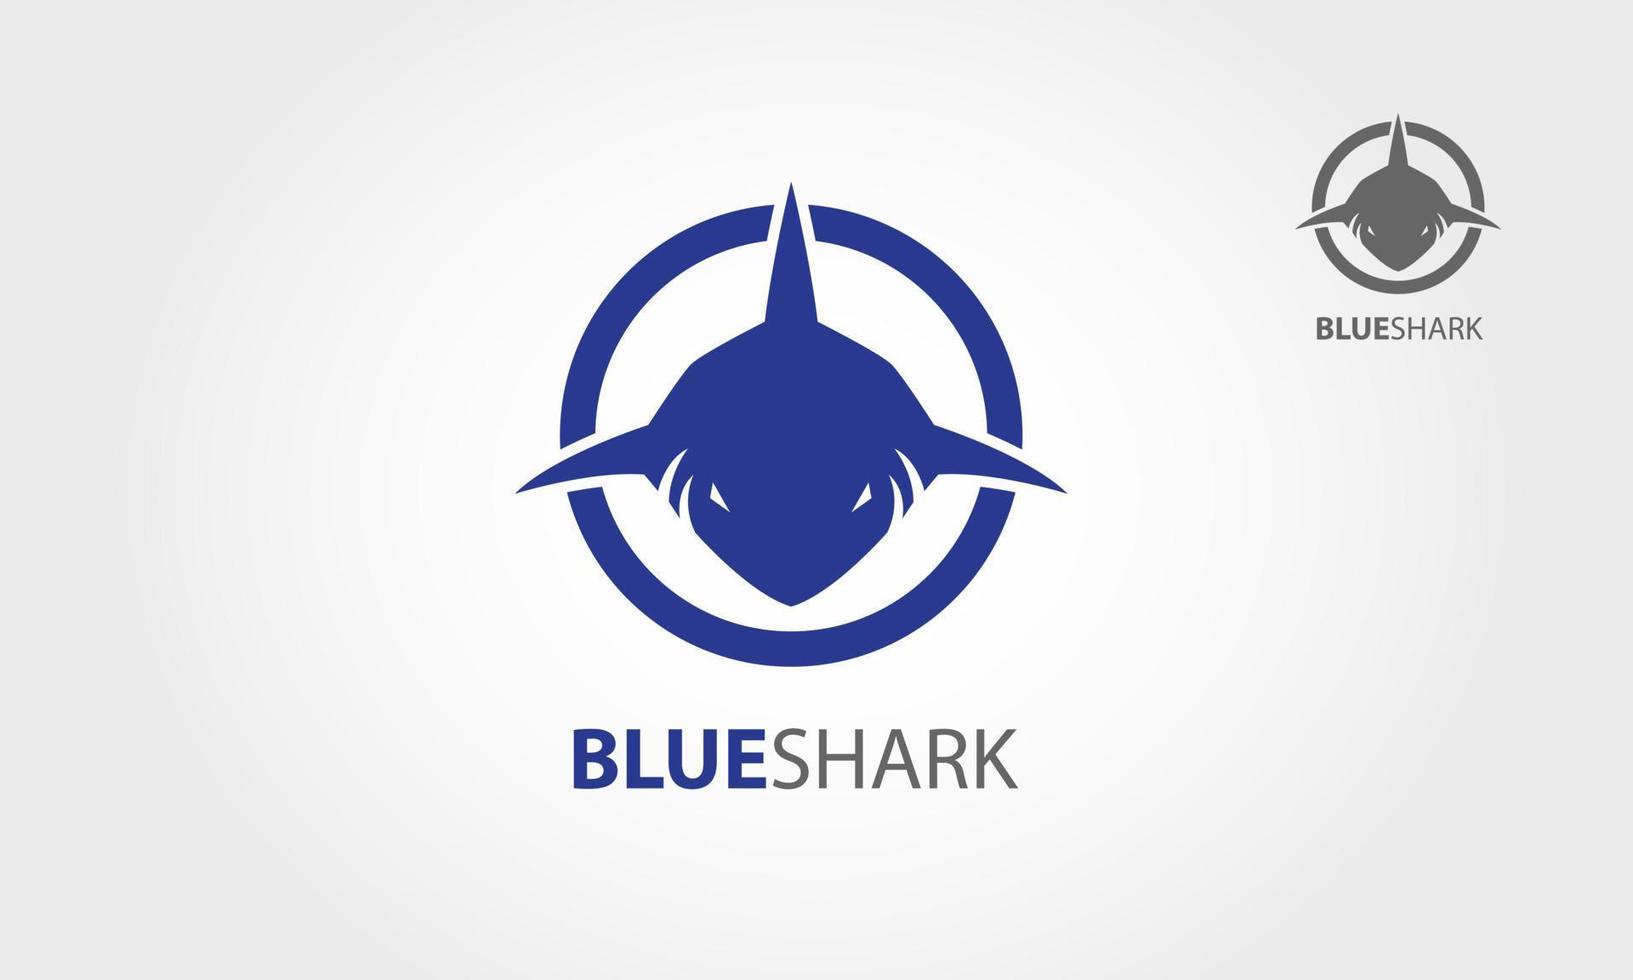 blauwe haai vector logo sjabloon. frontale hoofd van haai vector logo illustratie. het symboliseert agressie, druk, kracht, snelheid, aanval.